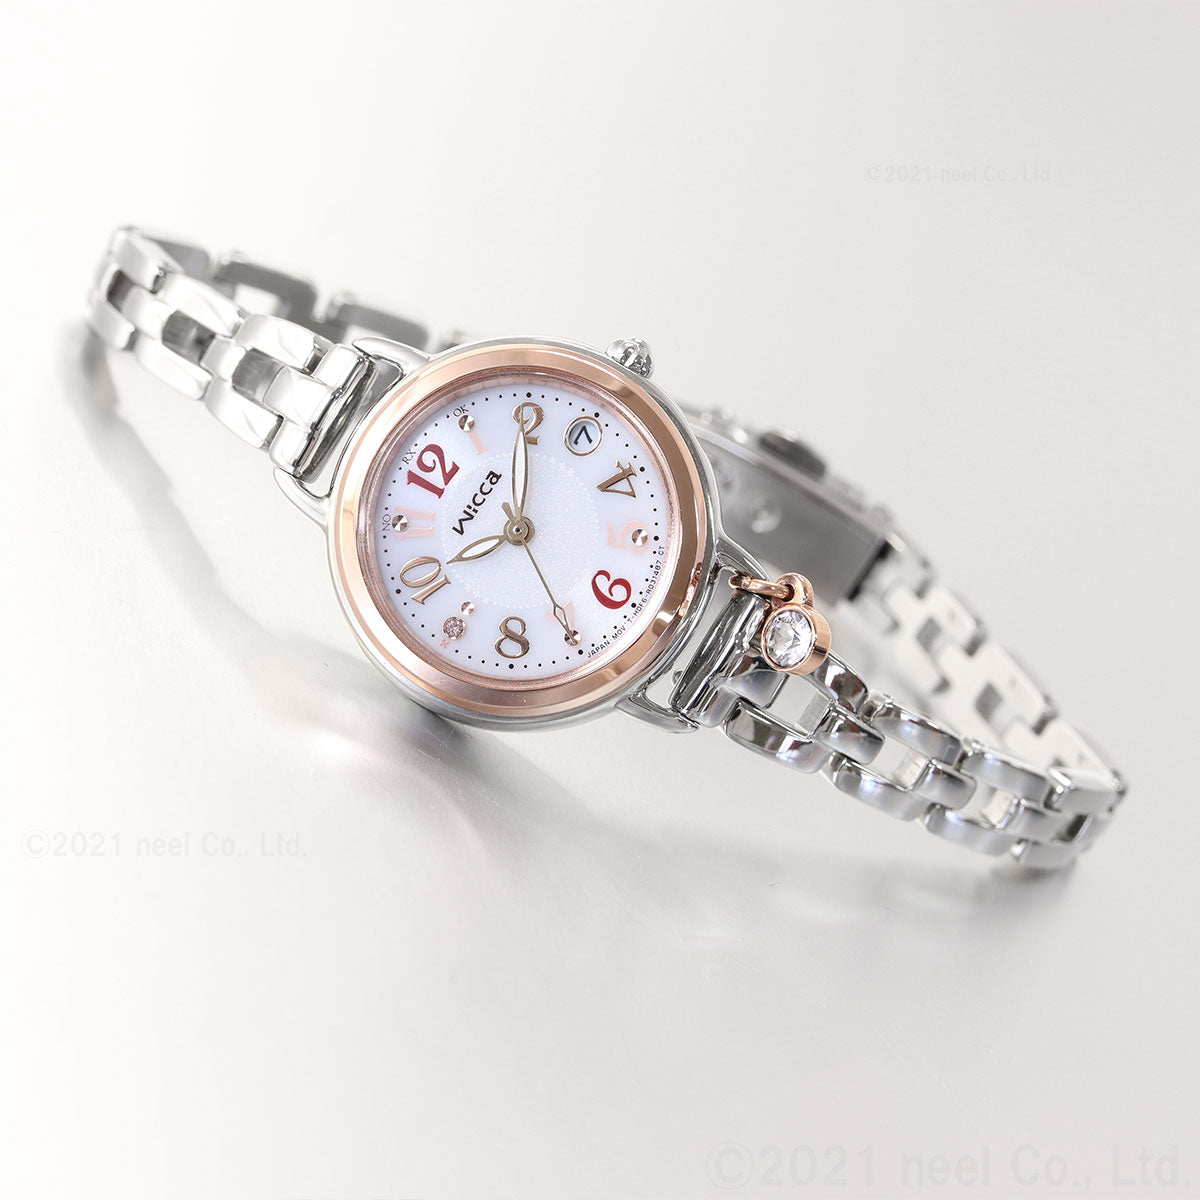 シチズン腕時計 ウィッカ ソーラー電波時計 ブレスラインKL0-511-11 レディース腕時計